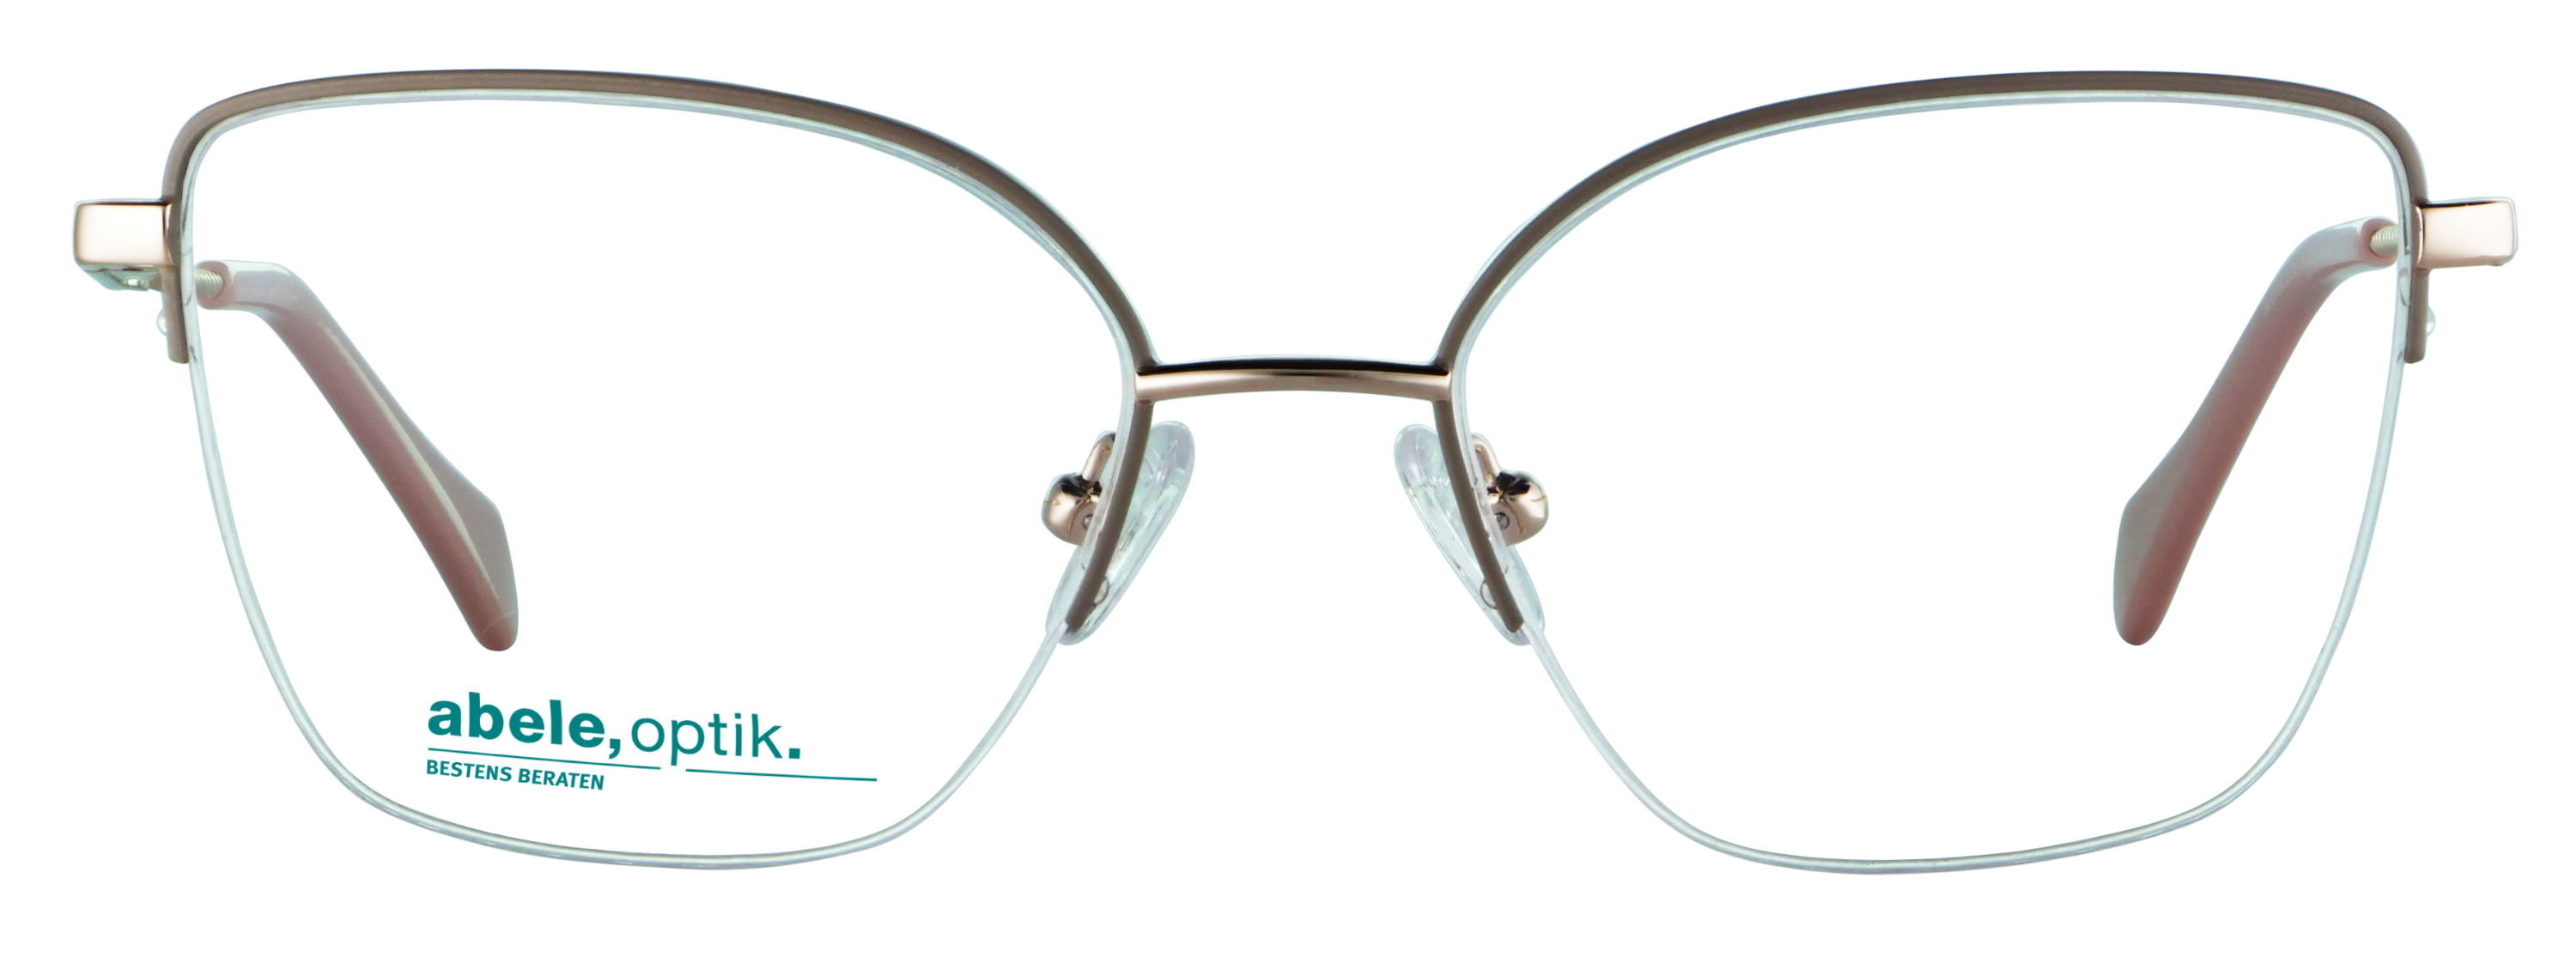 Das Bild zeigt die Korrektionsbrille 143251 von der Marke Abele Optik in grau beige.